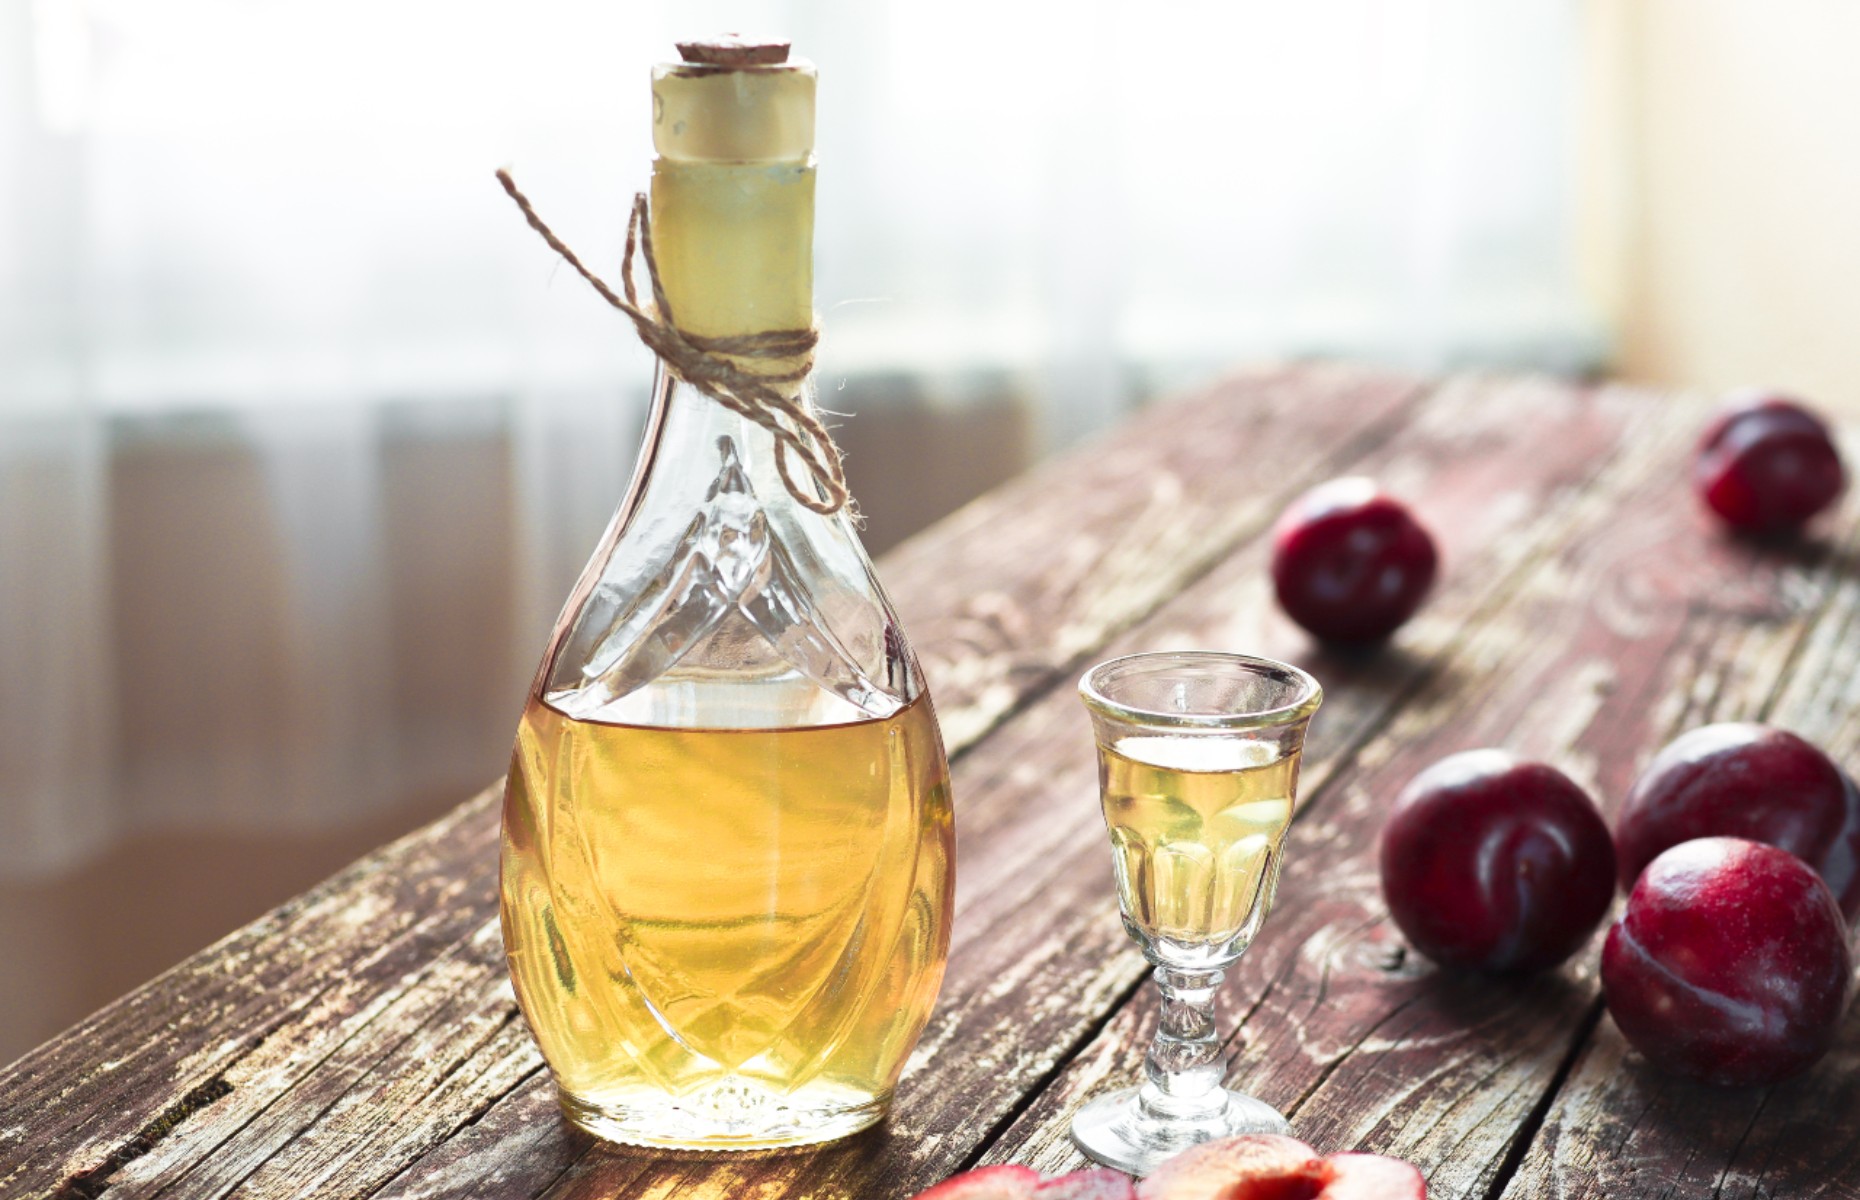 rakija, Croatian fruit brandy (Image: t.sableaux/Shutterstock)